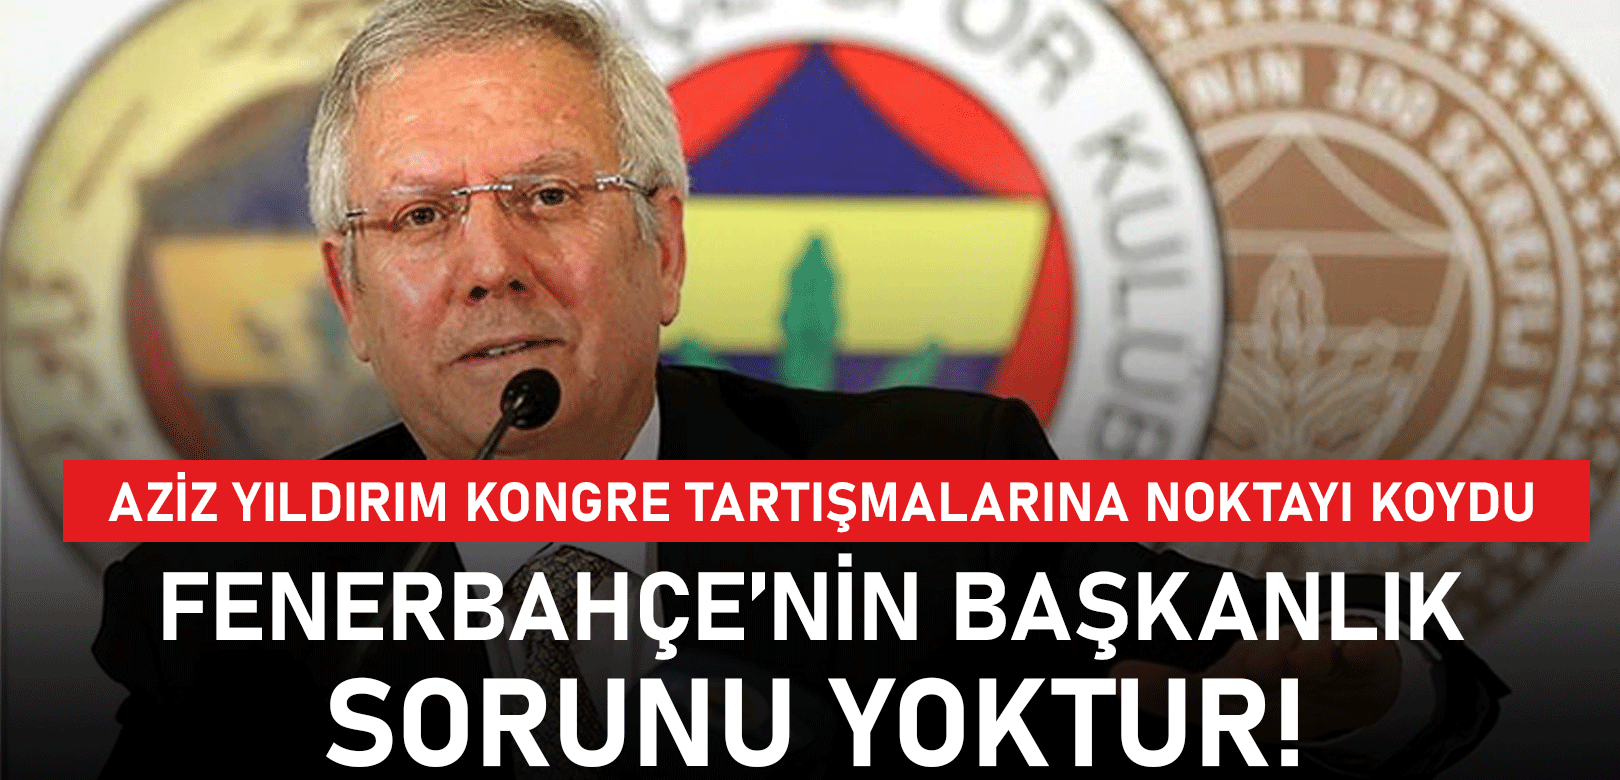 Aziz Yıldırım kongre tartışmalarına son noktayı koydu: Fenerbahçe'nin başkanlık sorunu yoktur